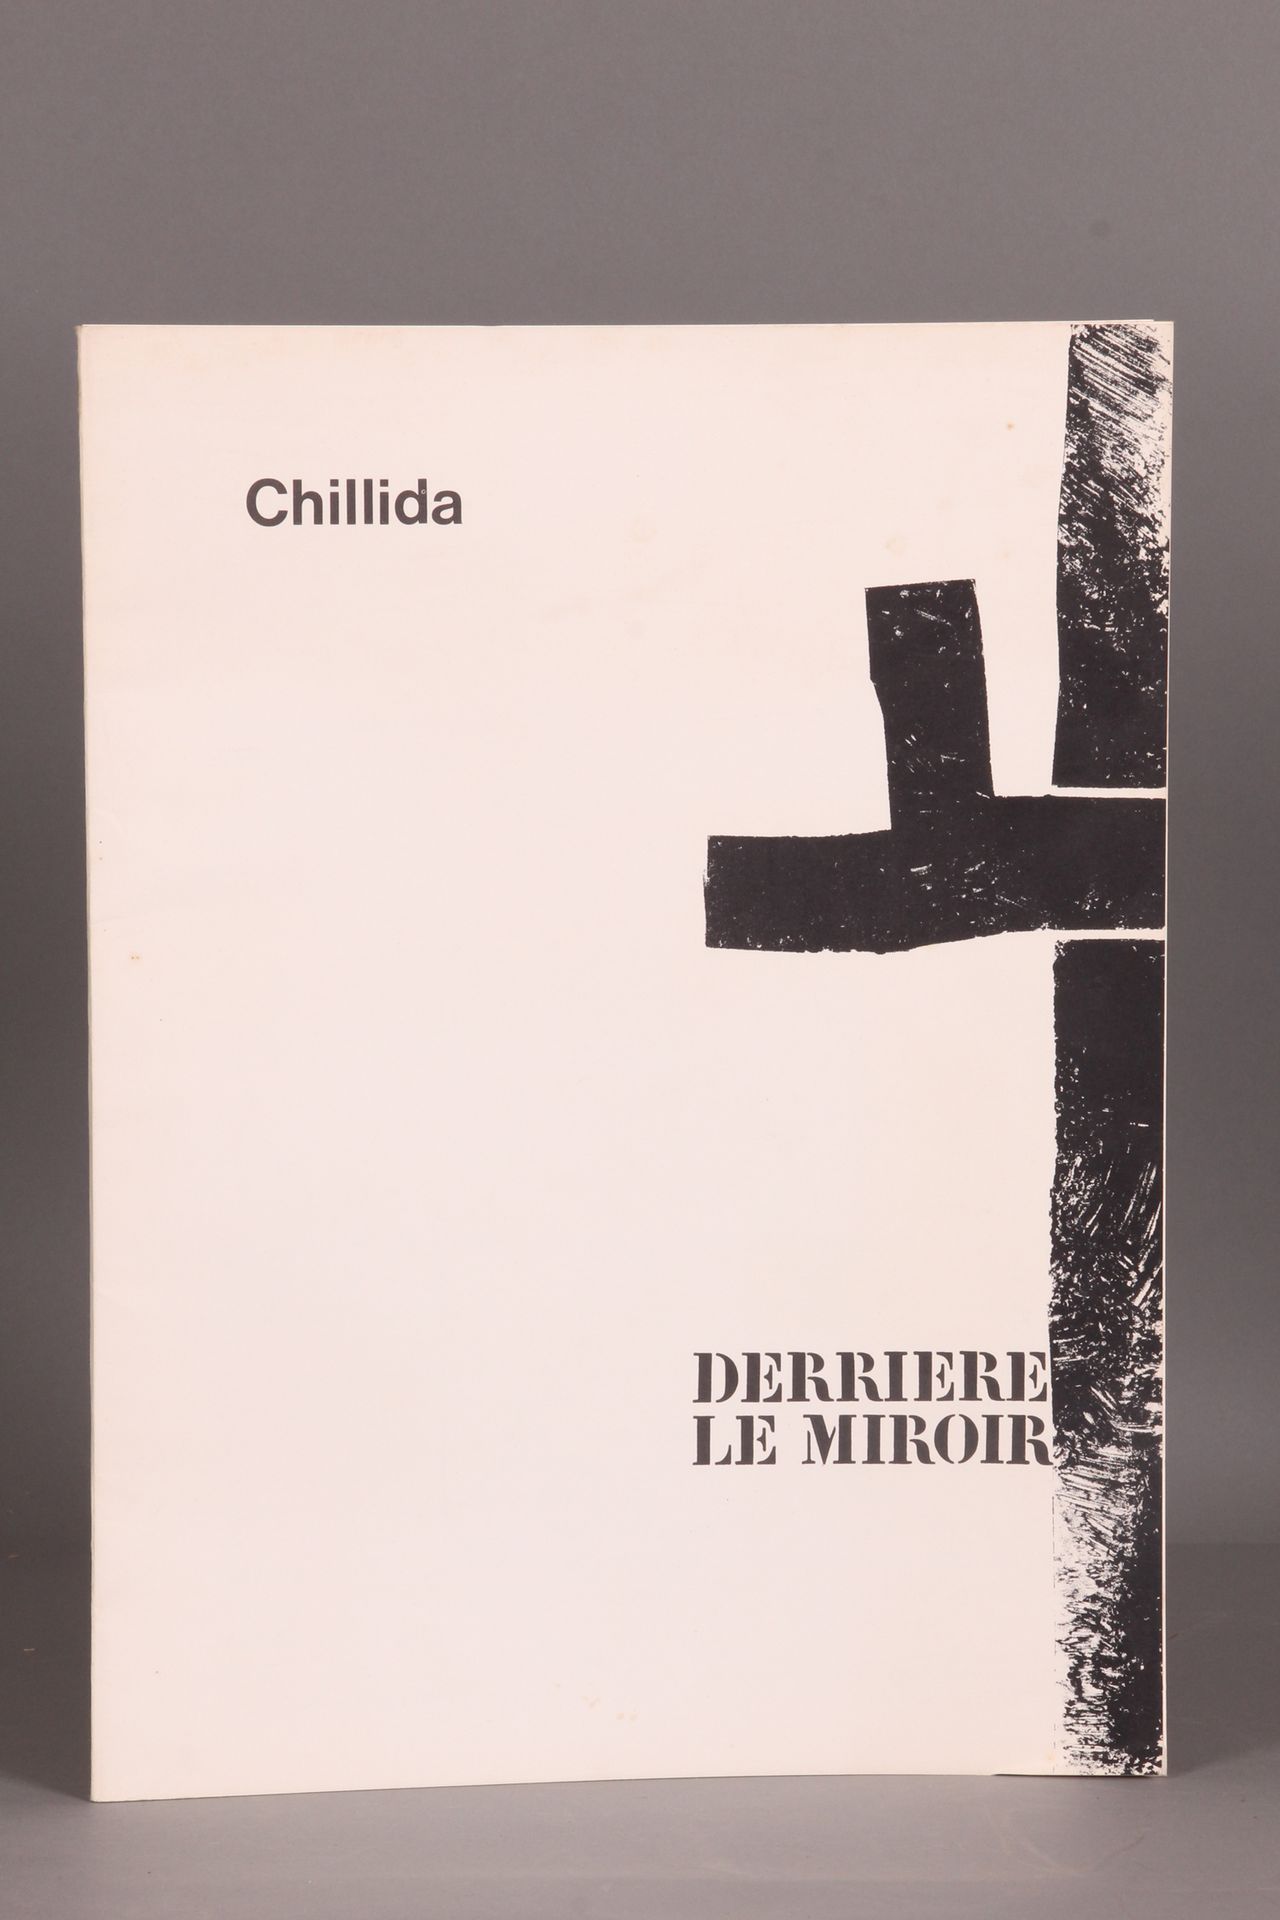 [DERRIÈRE LE MIROIR]. [CHILLIDA]. "N° 183.奇利达》，巴黎，Maeght 出版社，1970 年。对开本（38 x 28）&hellip;